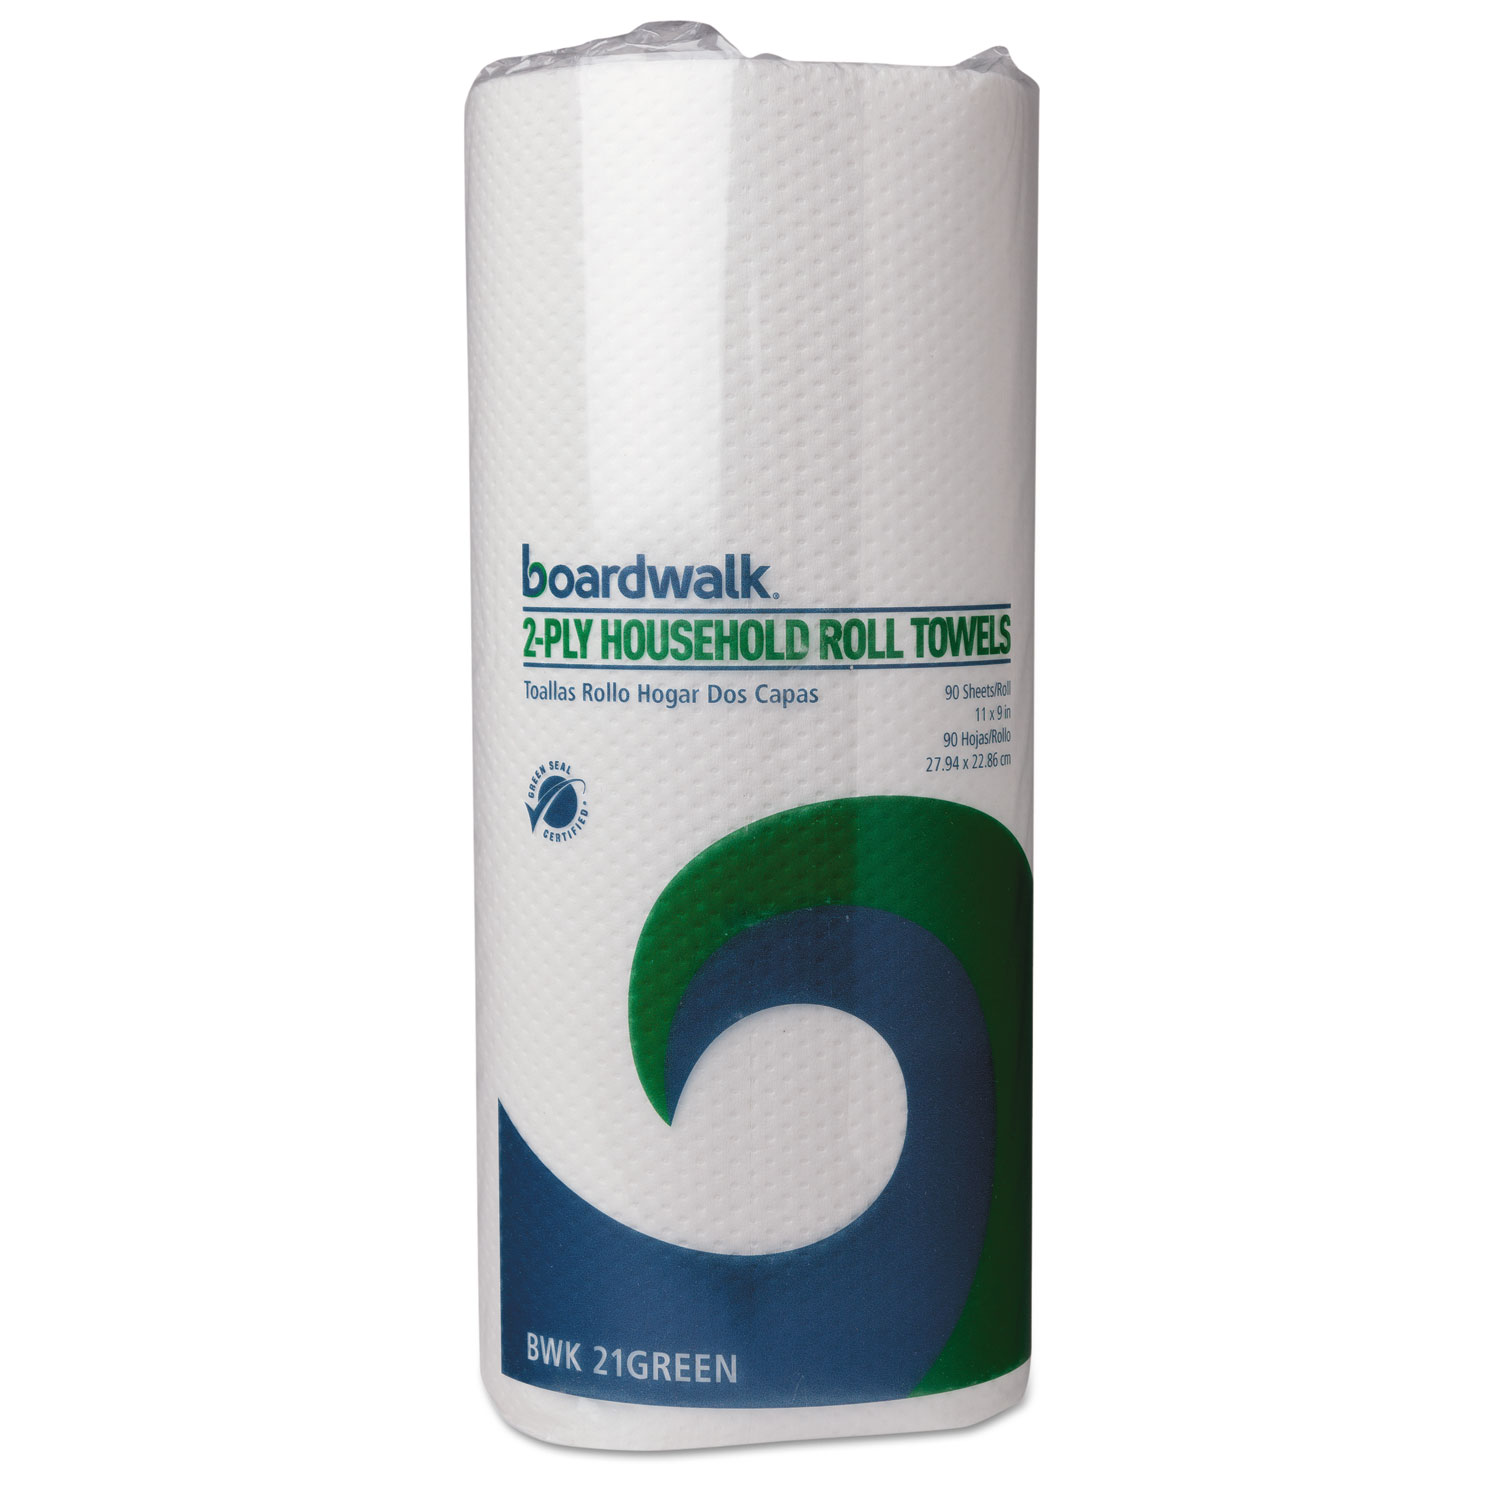 Boardwalk Green Household Roll Towels, 2-Ply, 11x9, 90 Sheets/Roll, 30 Rolls/Ctn